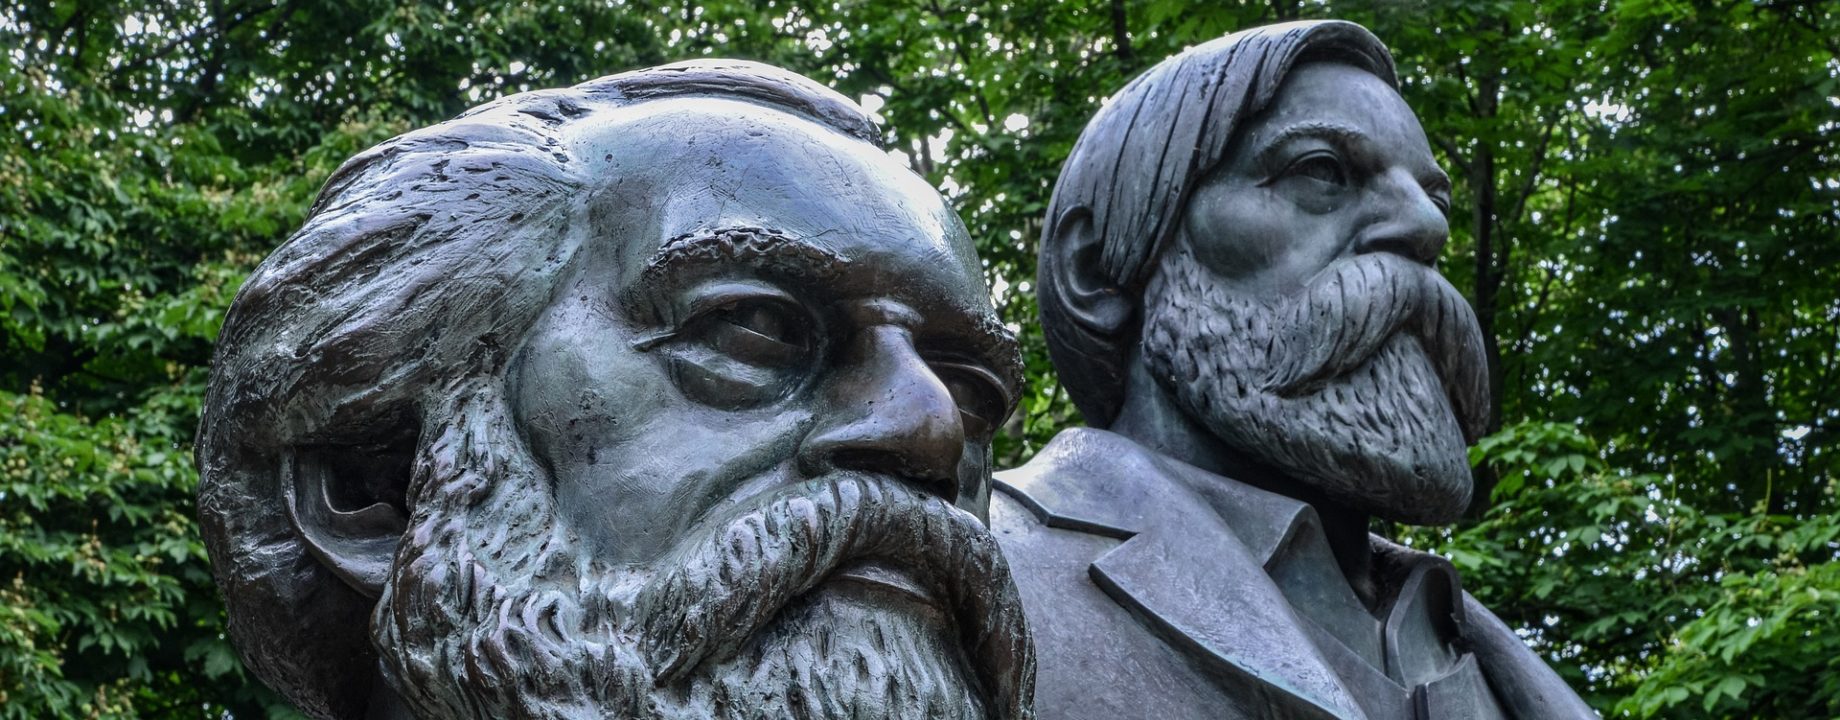 Marx és Engels szobra Berlinben (Kép: Pixabay)